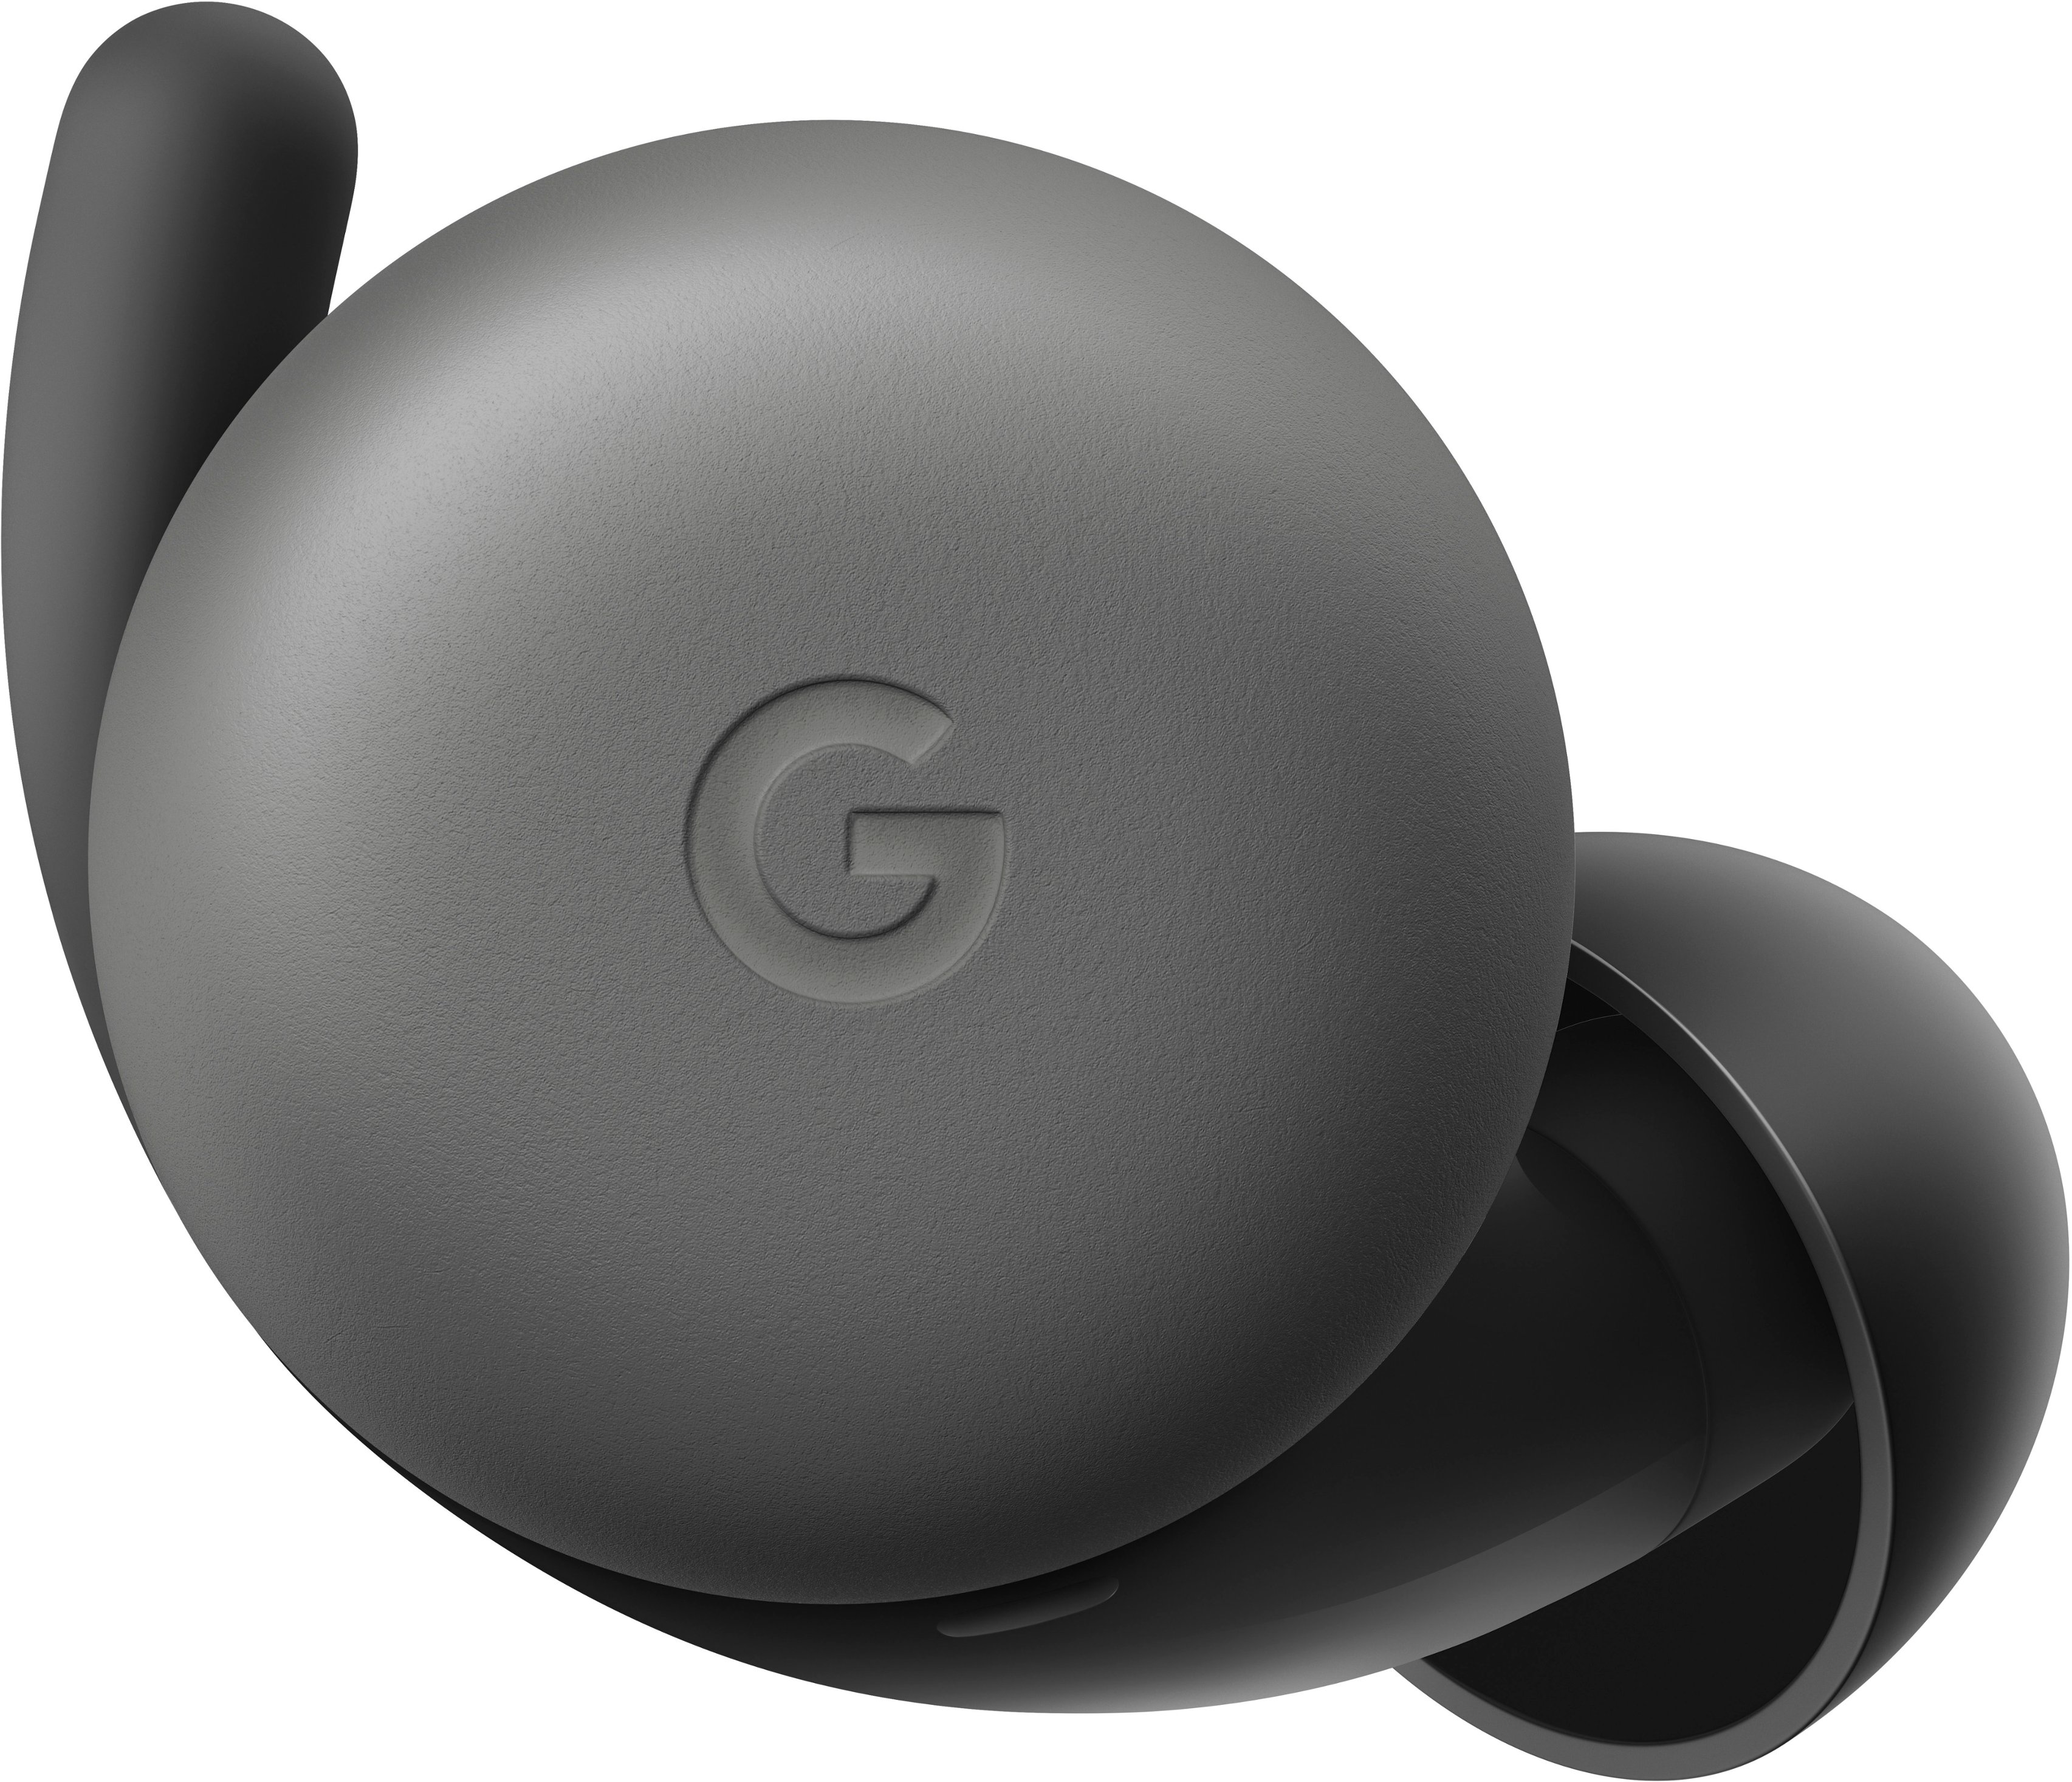 Buy Pixel Charcoal Buds In-Ear A-Series Best GA04281-US Headphones - True Wireless Google